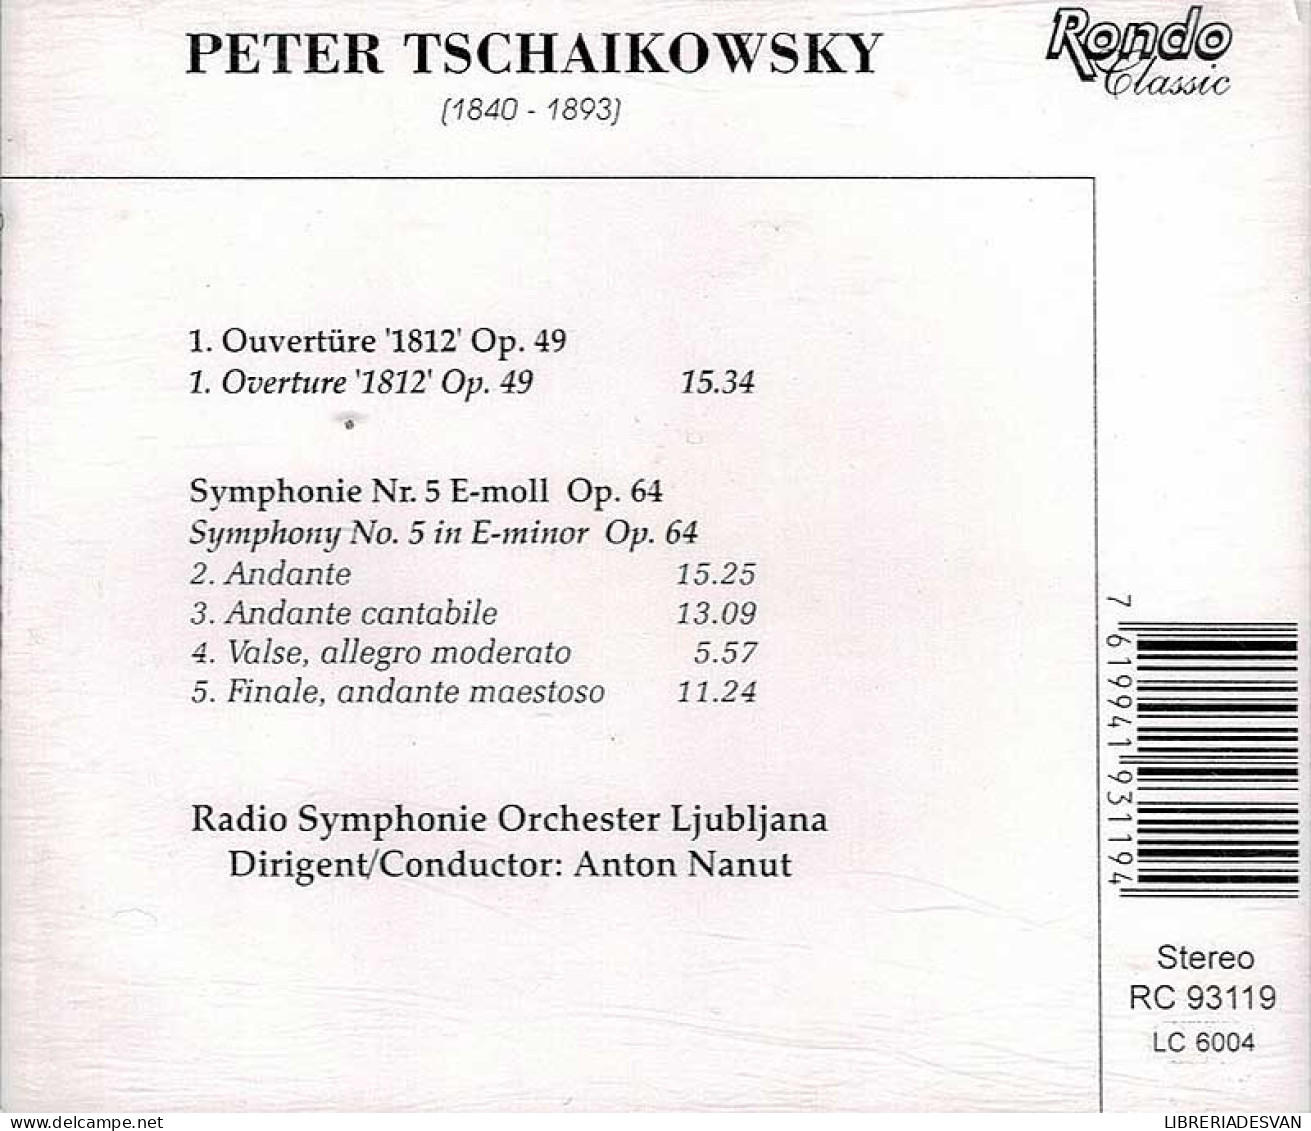 Peter Tschaikowsky - Overture 1812 Op. 49. Symphony No. 5 Op. 64. CD - Clásica